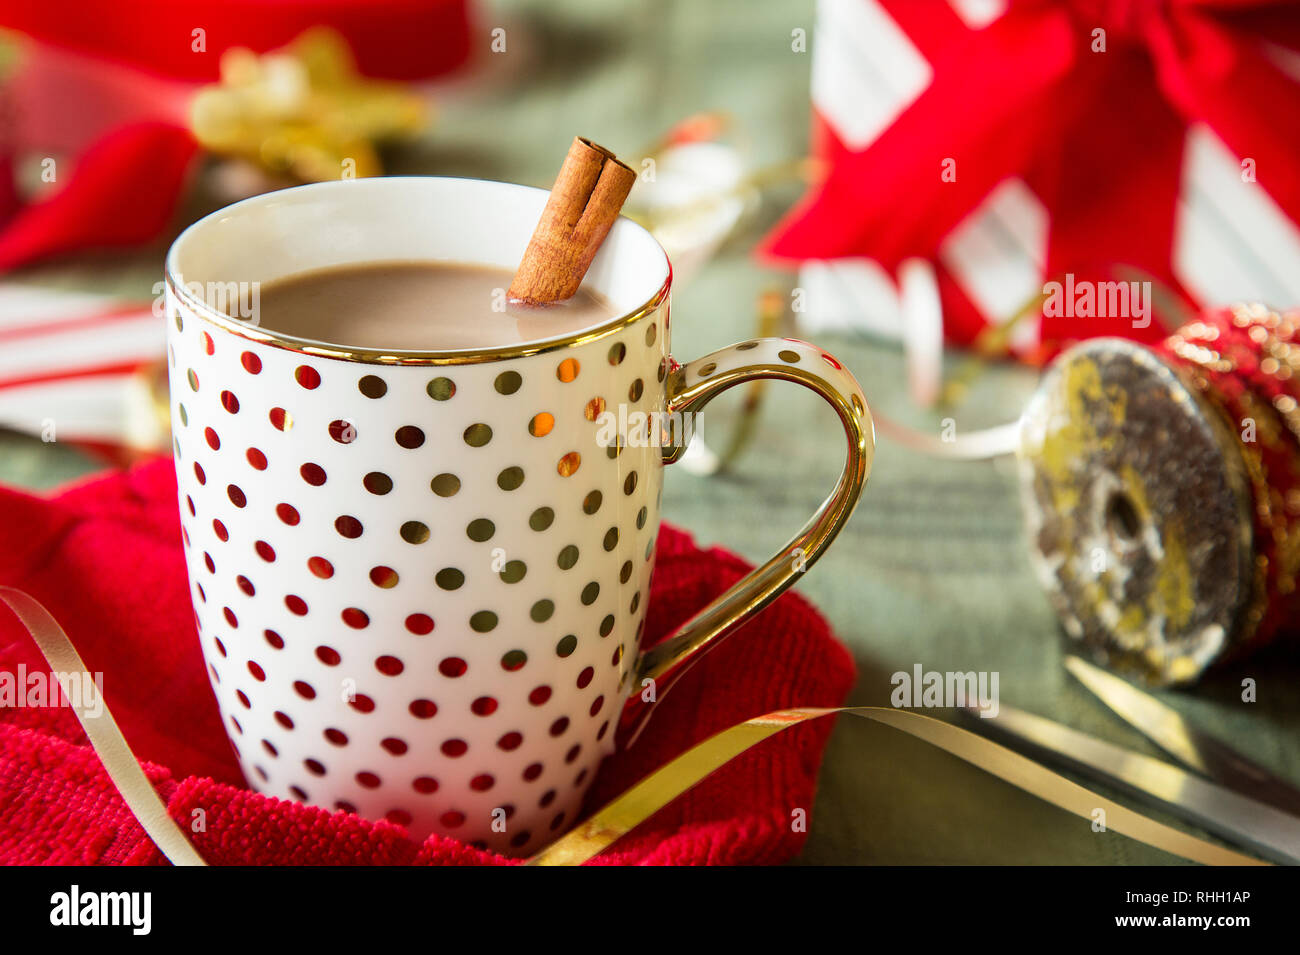 Polka Dot or mug de chocolat chaud avec le bâton de cannelle entre les vacances de Noël, le rouge et le blanc du papier d'emballage et ruban sur la surface verte. Banque D'Images